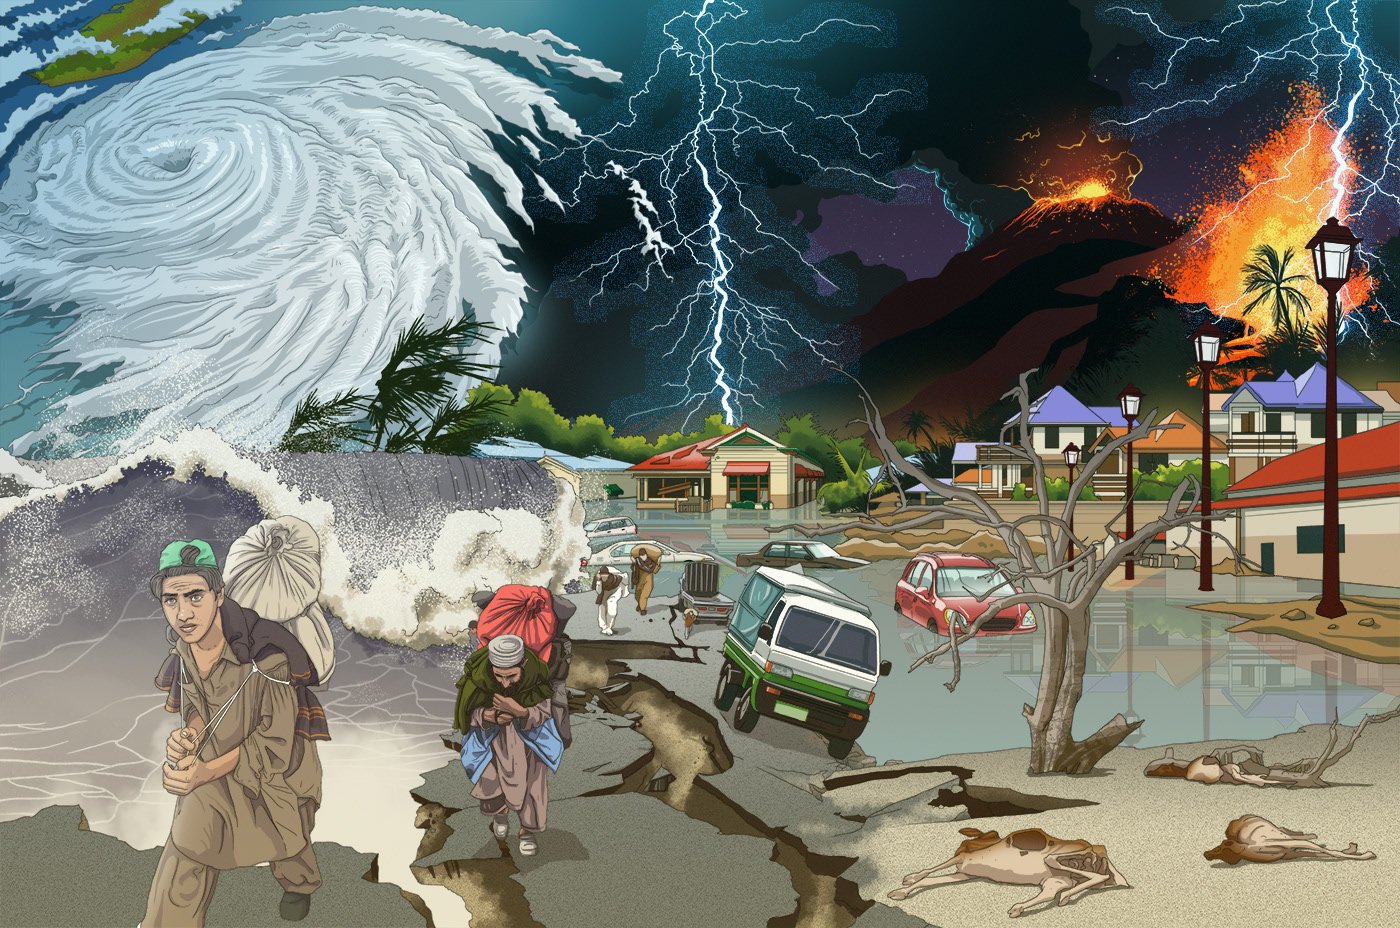 Nature disasters. Стихийные бедствия. Стизх йные бедствия. ЧС стихийные бедствия. Стихийные бедствия картинки.